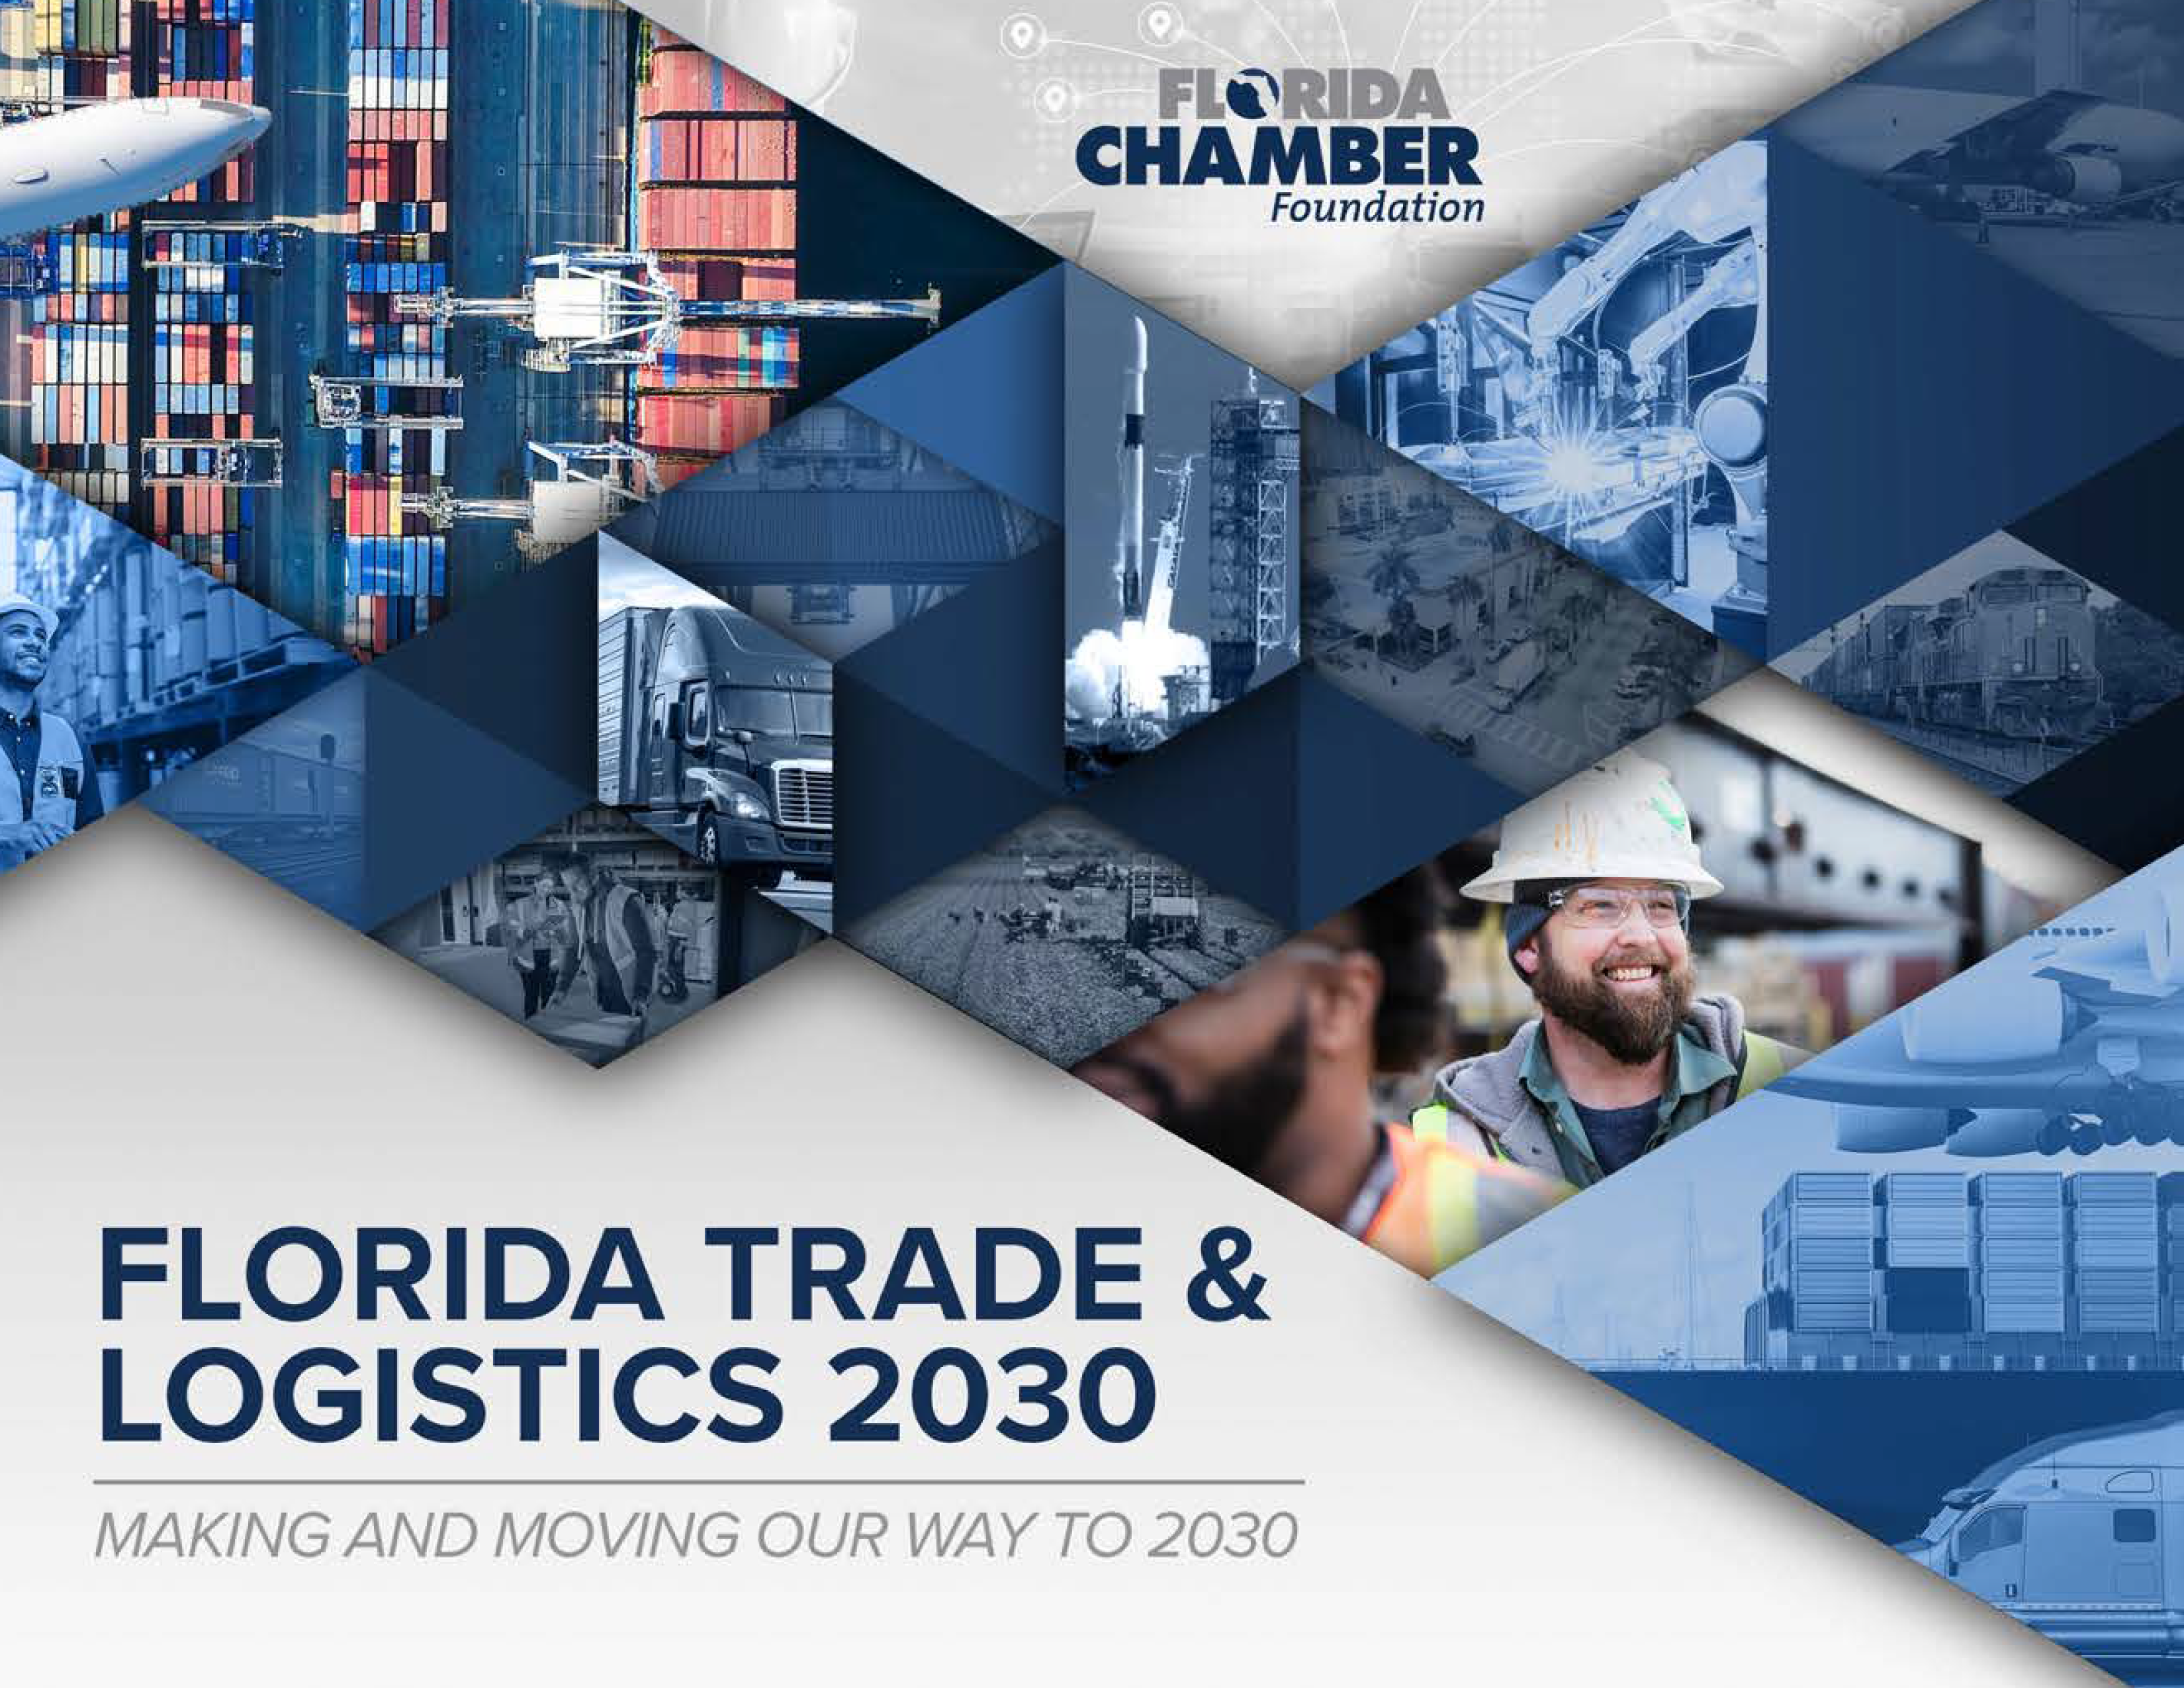 Florida Trade & Logistics Study 2030 cover image